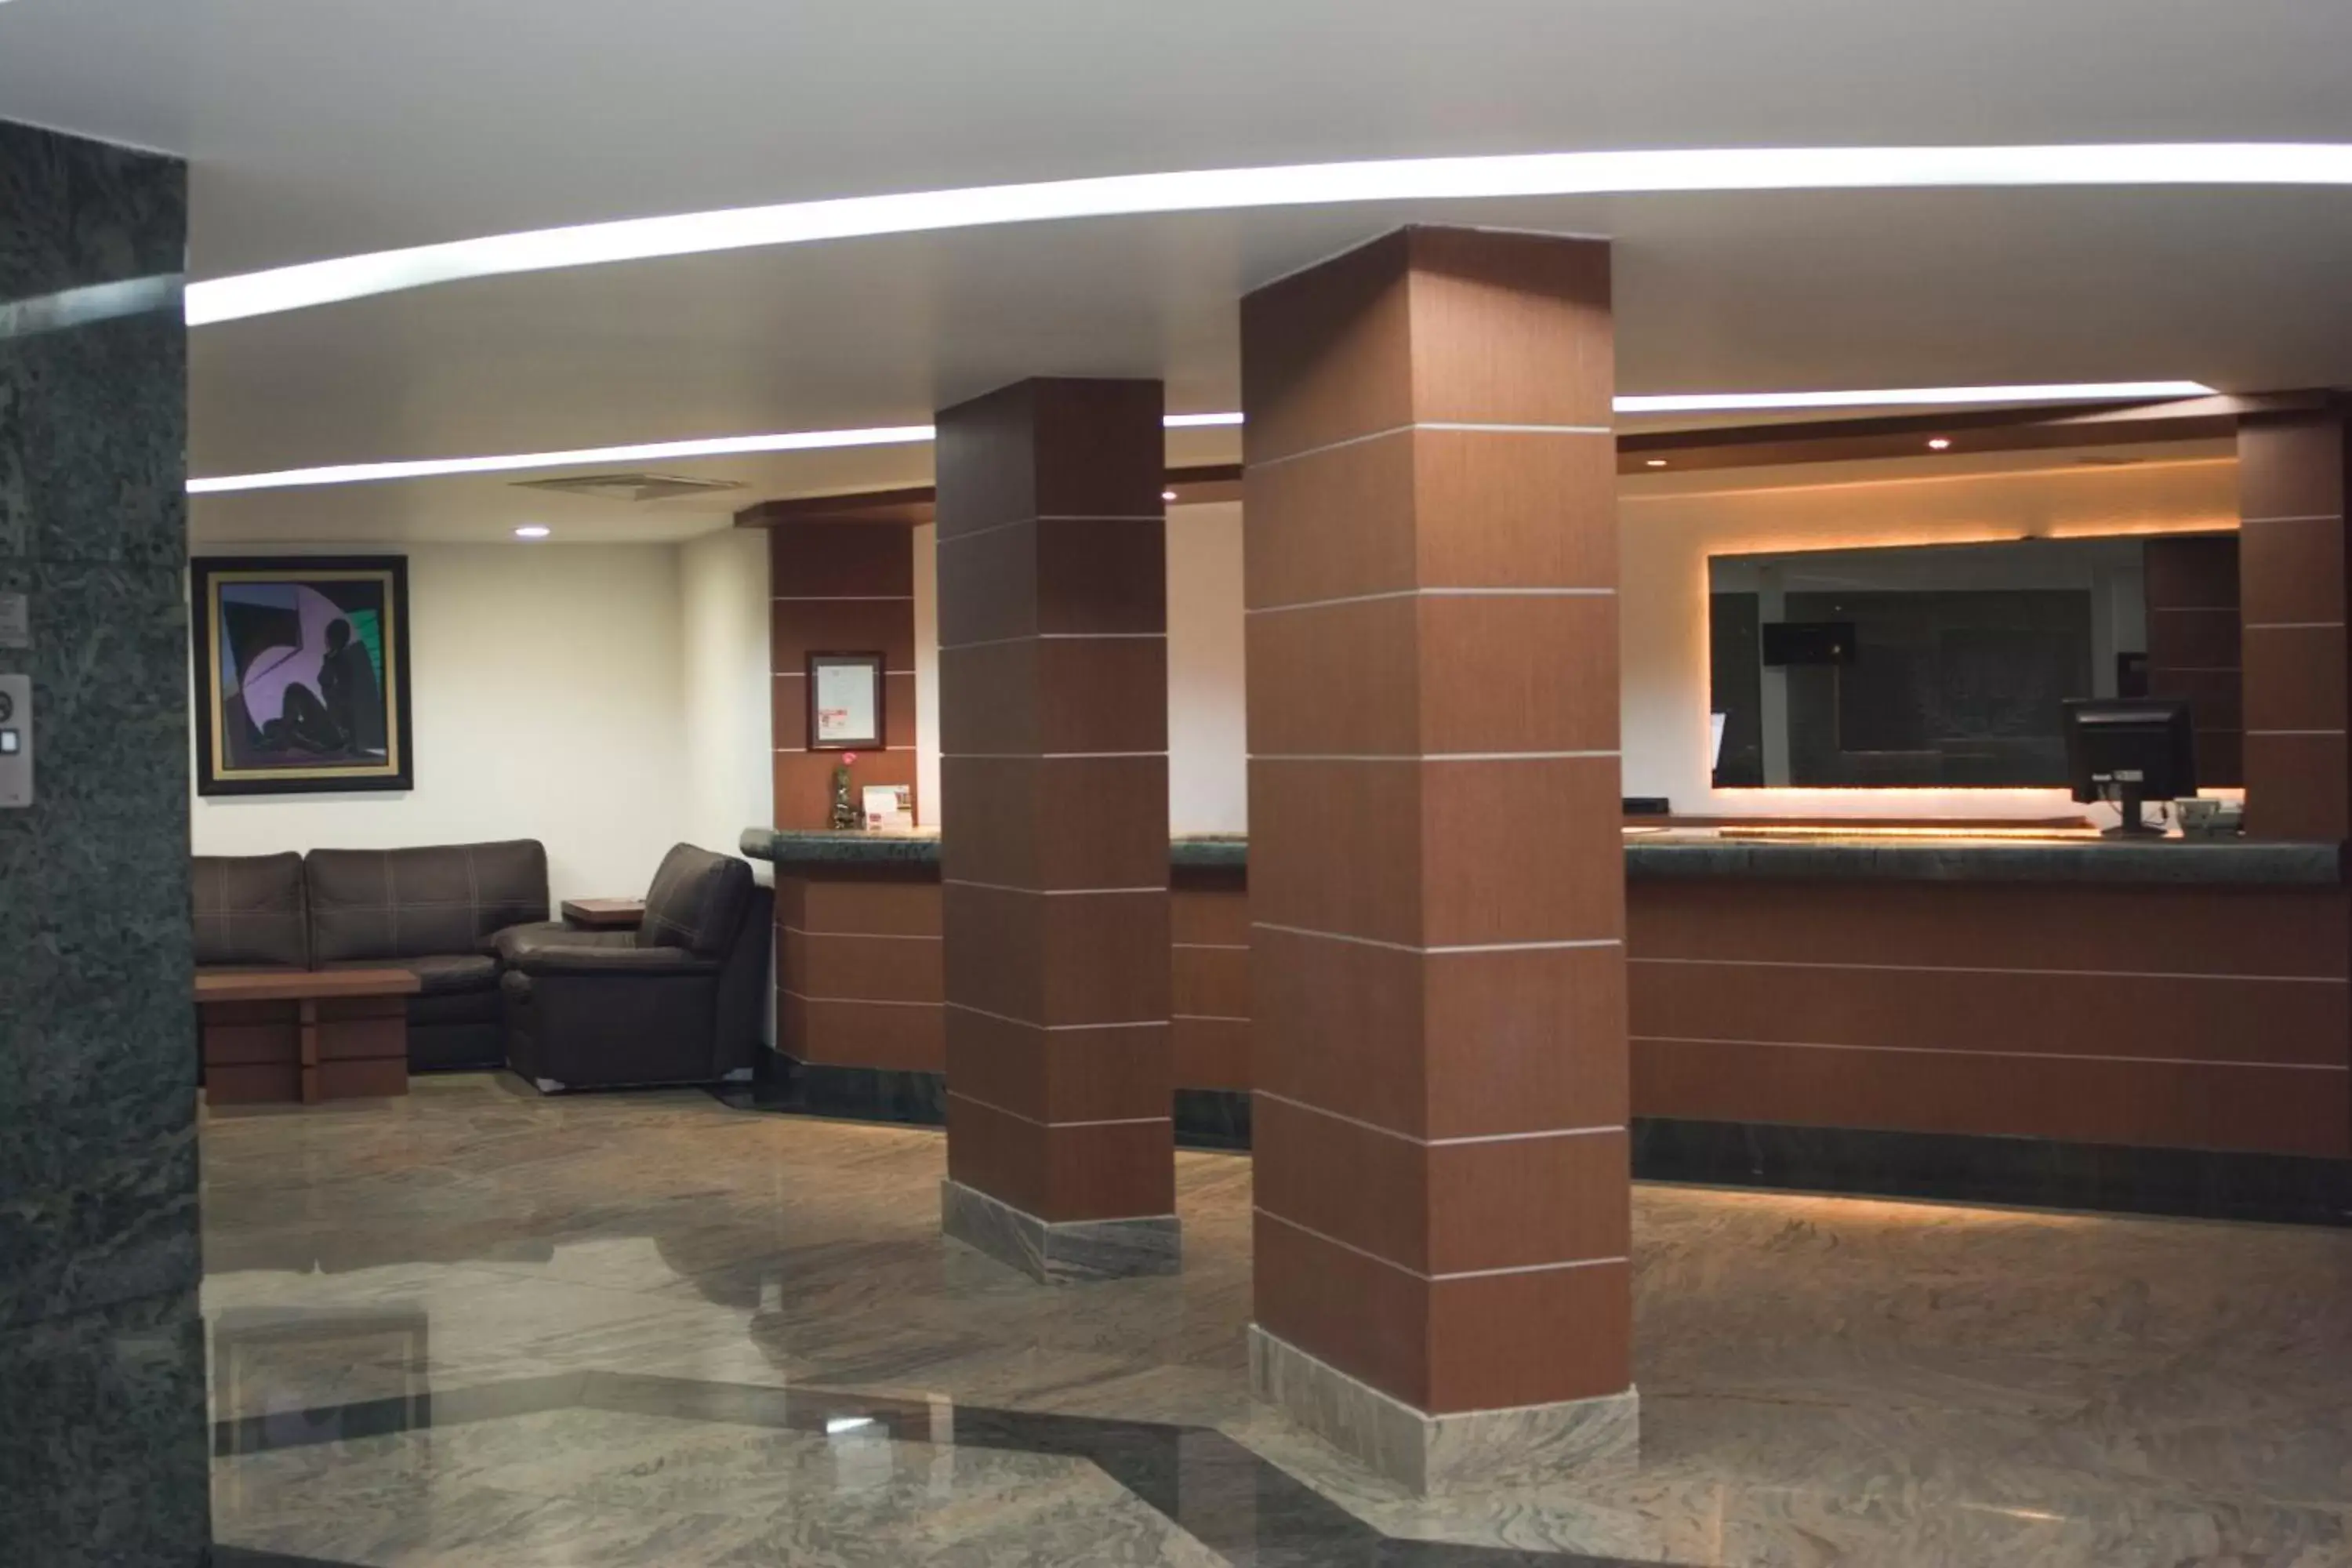 Lobby or reception, Lobby/Reception in Hotel Astor